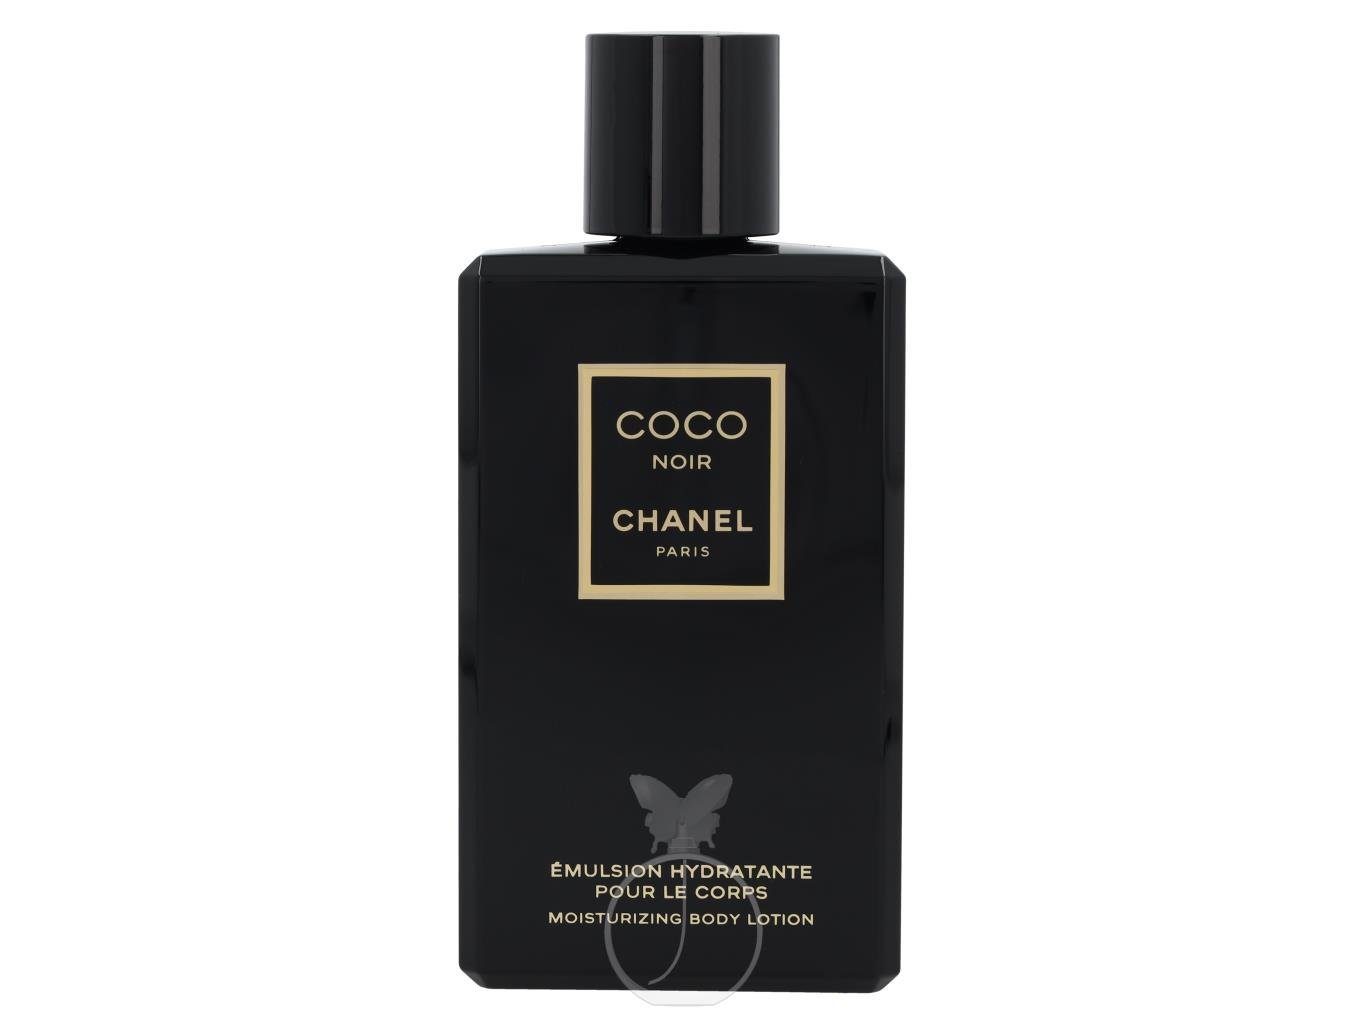 CHANEL Körperpflegemittel Chanel Coco Noir Body Lotion (200 ml), siehe  Beschreibungstext